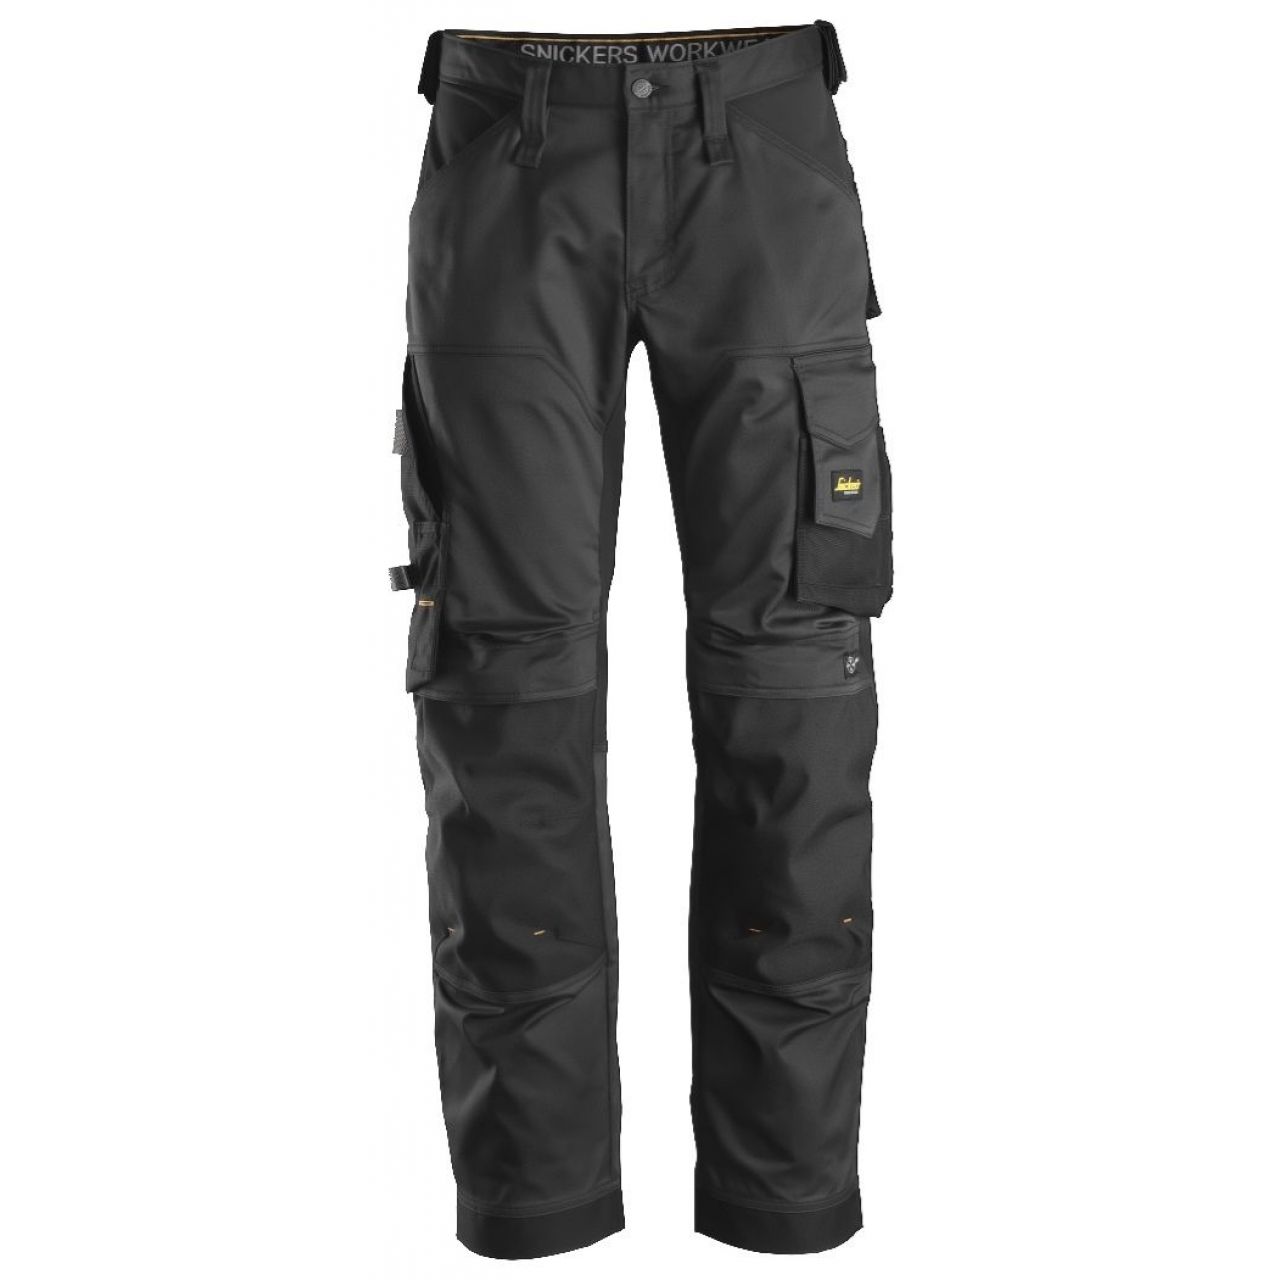 Pantalon elastico ajuste holgado AllroundWork negro talla 256